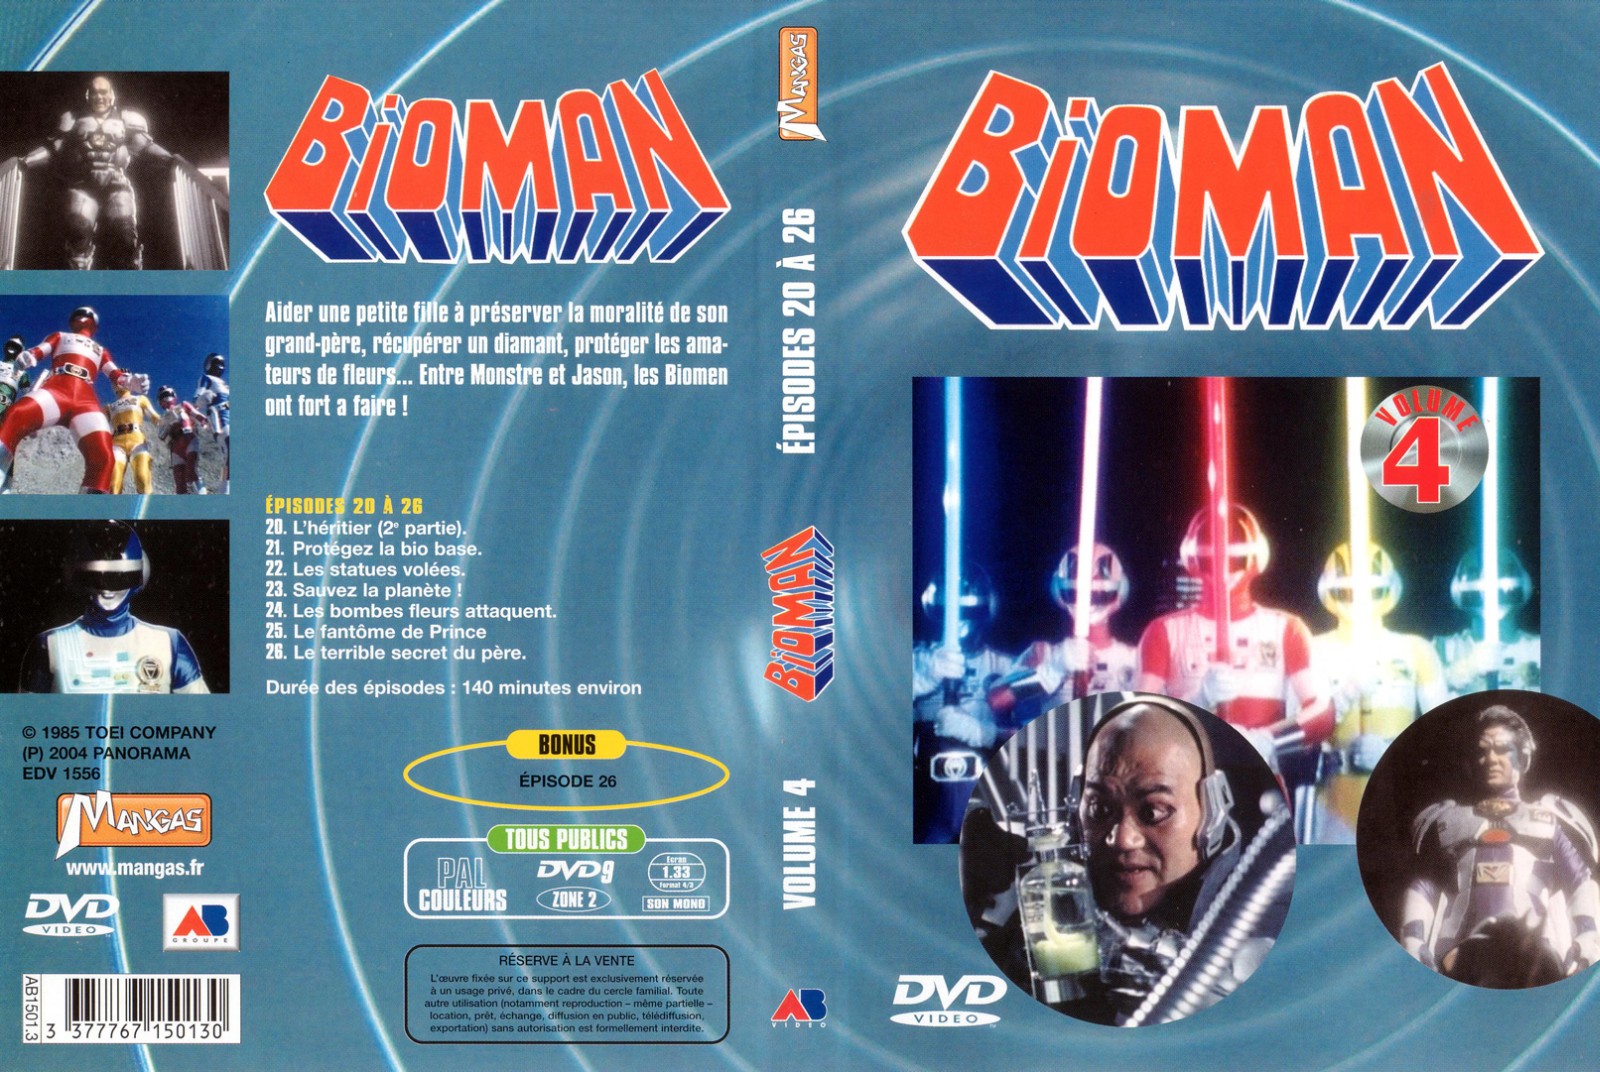 Jaquette DVD Bioman vol 04